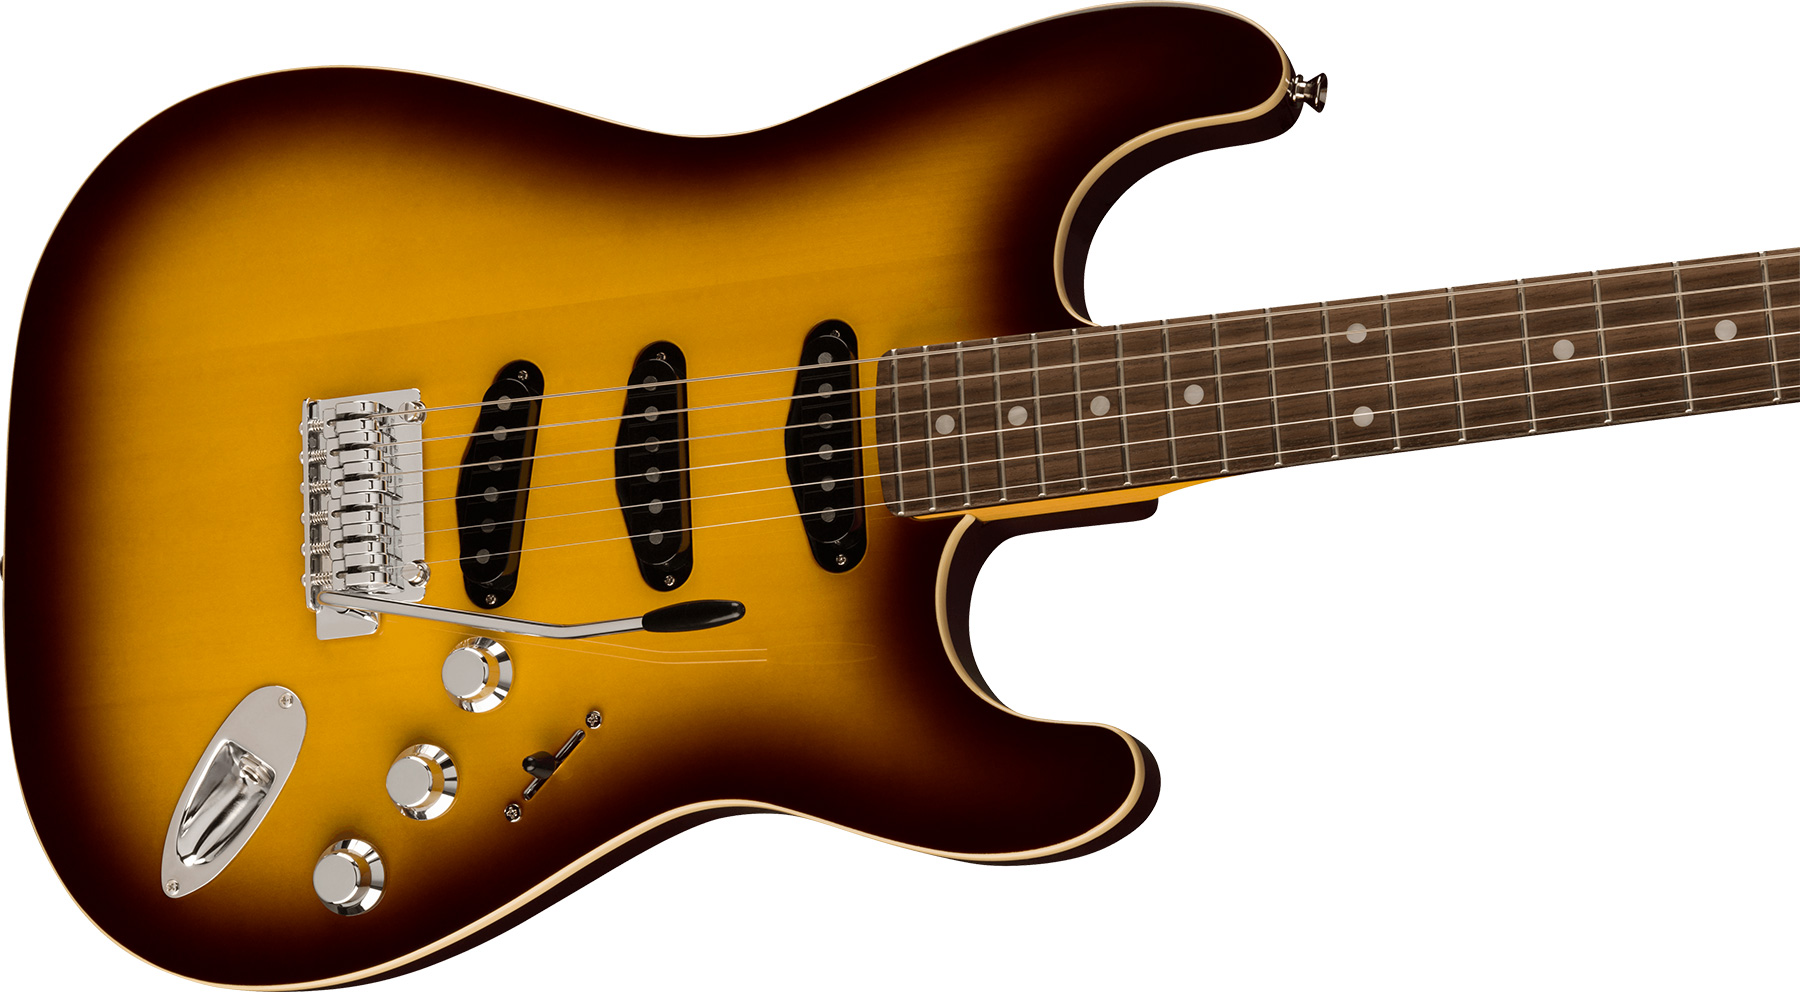 Fender Strat Aerodyne Special Jap 3s Trem Rw - Chocolate Burst - Elektrische gitaar in Str-vorm - Variation 2